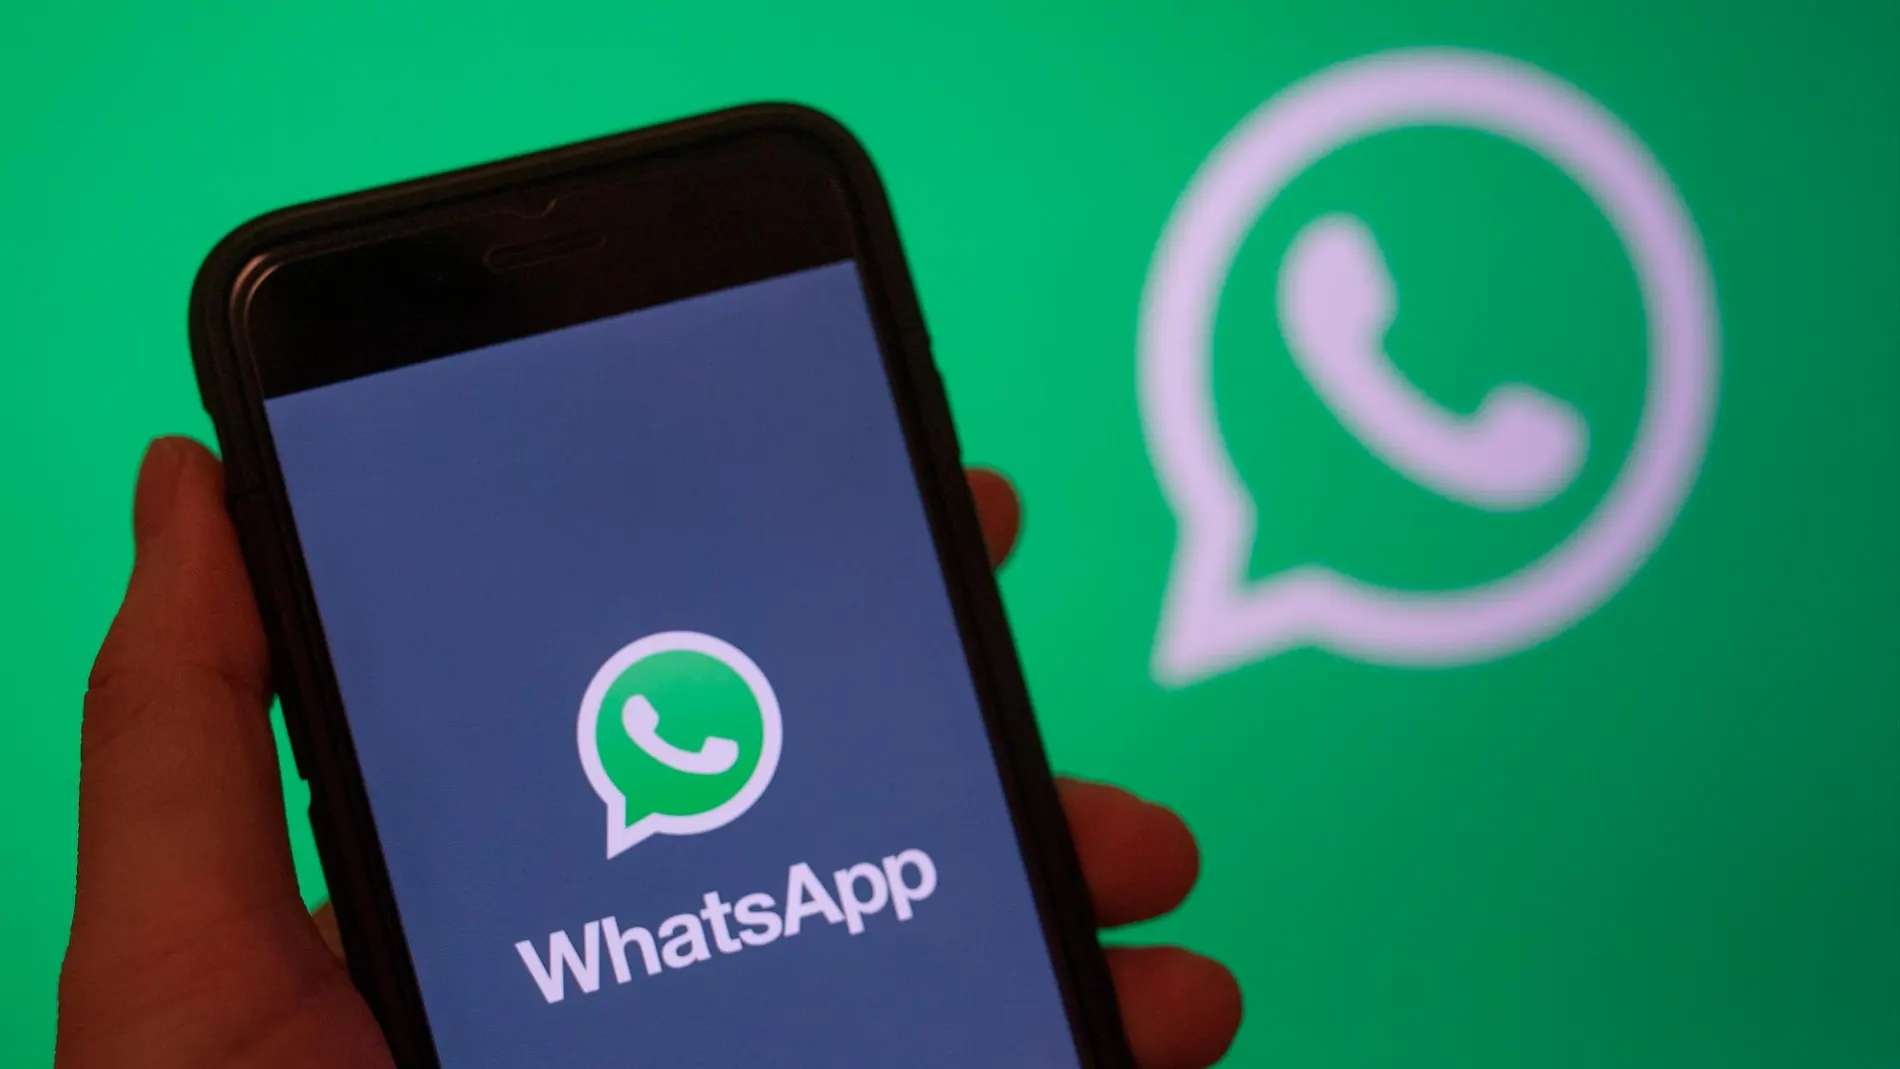 WhatsApp solo quiere cuentas que se descarguen desde la app oficial de la compañía / Efe